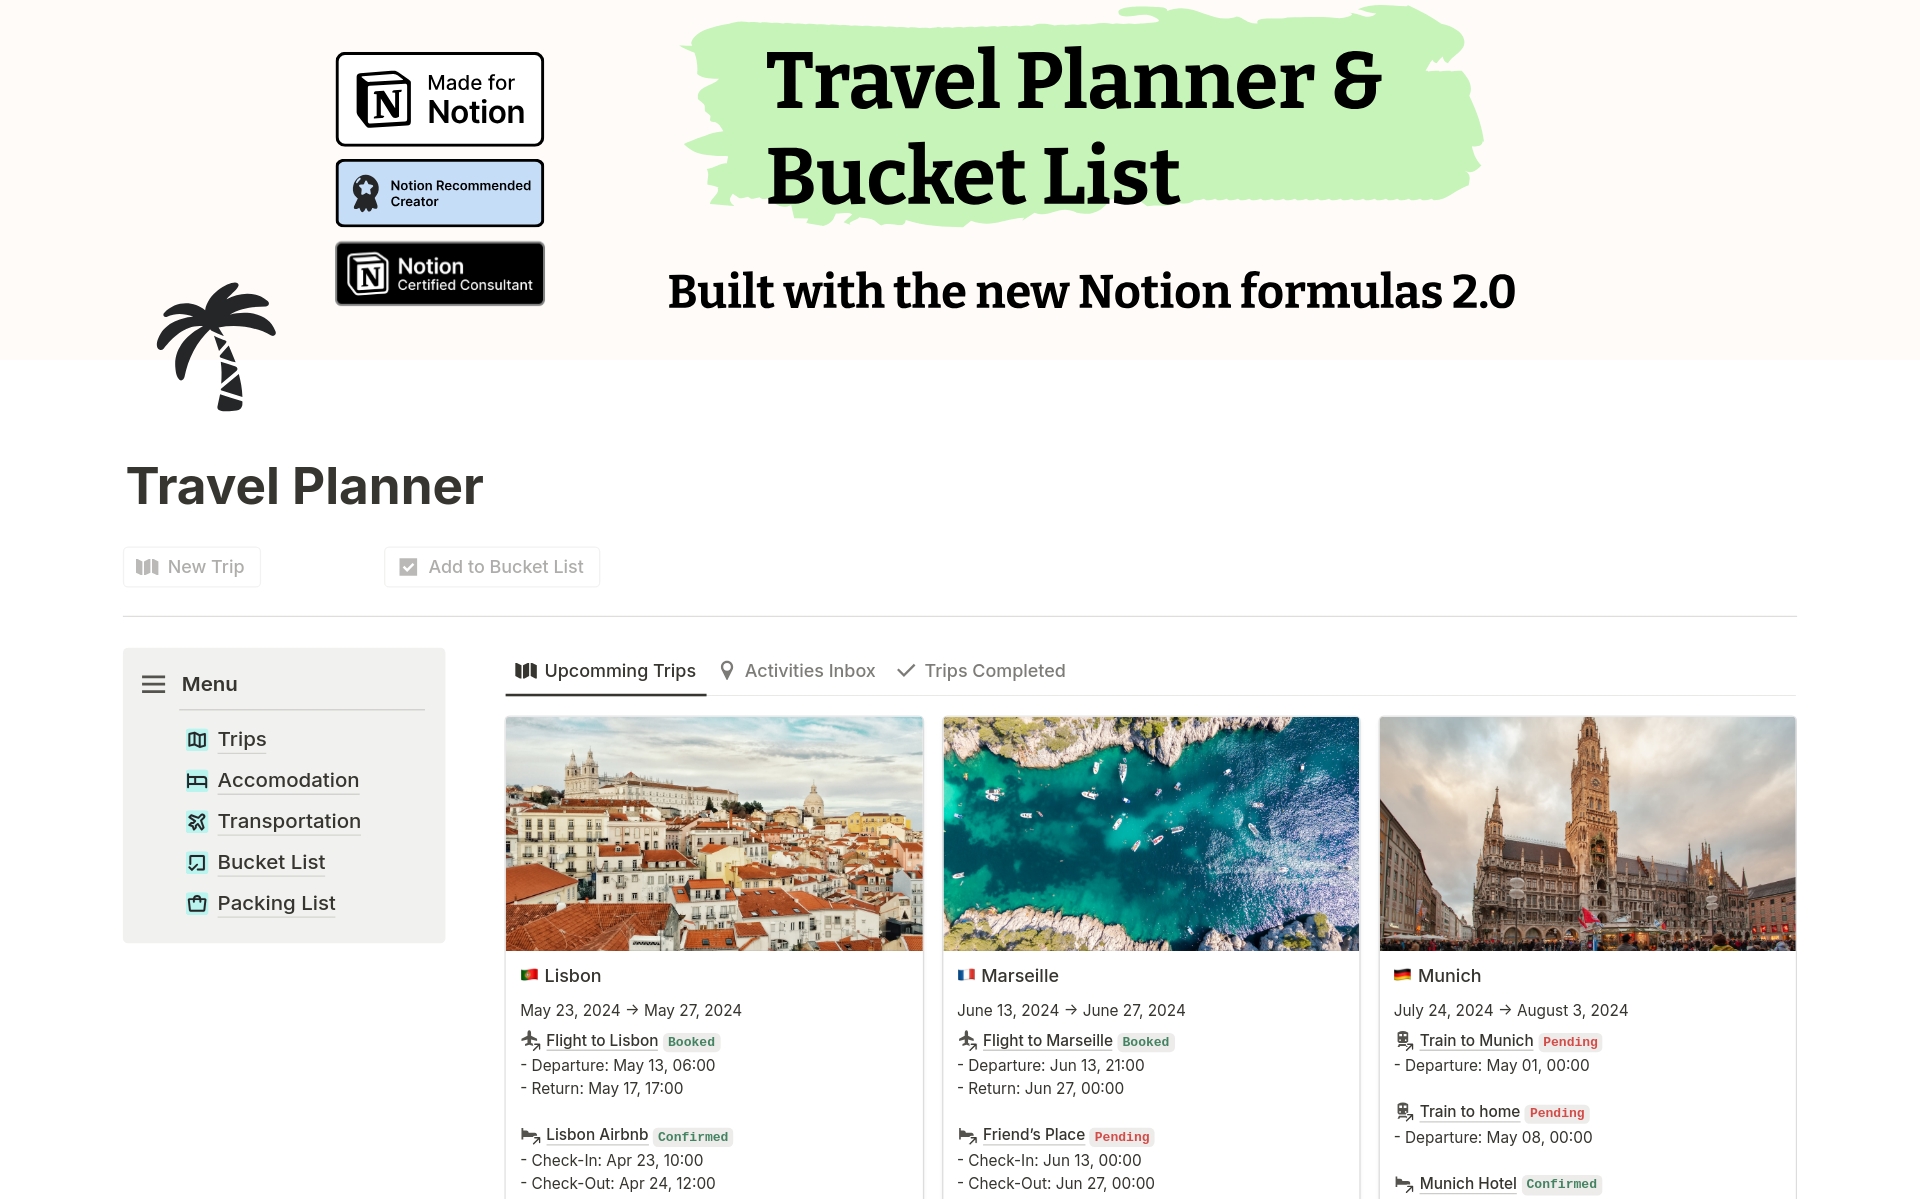 Aperçu du modèle de Travel Planner & Bucket List